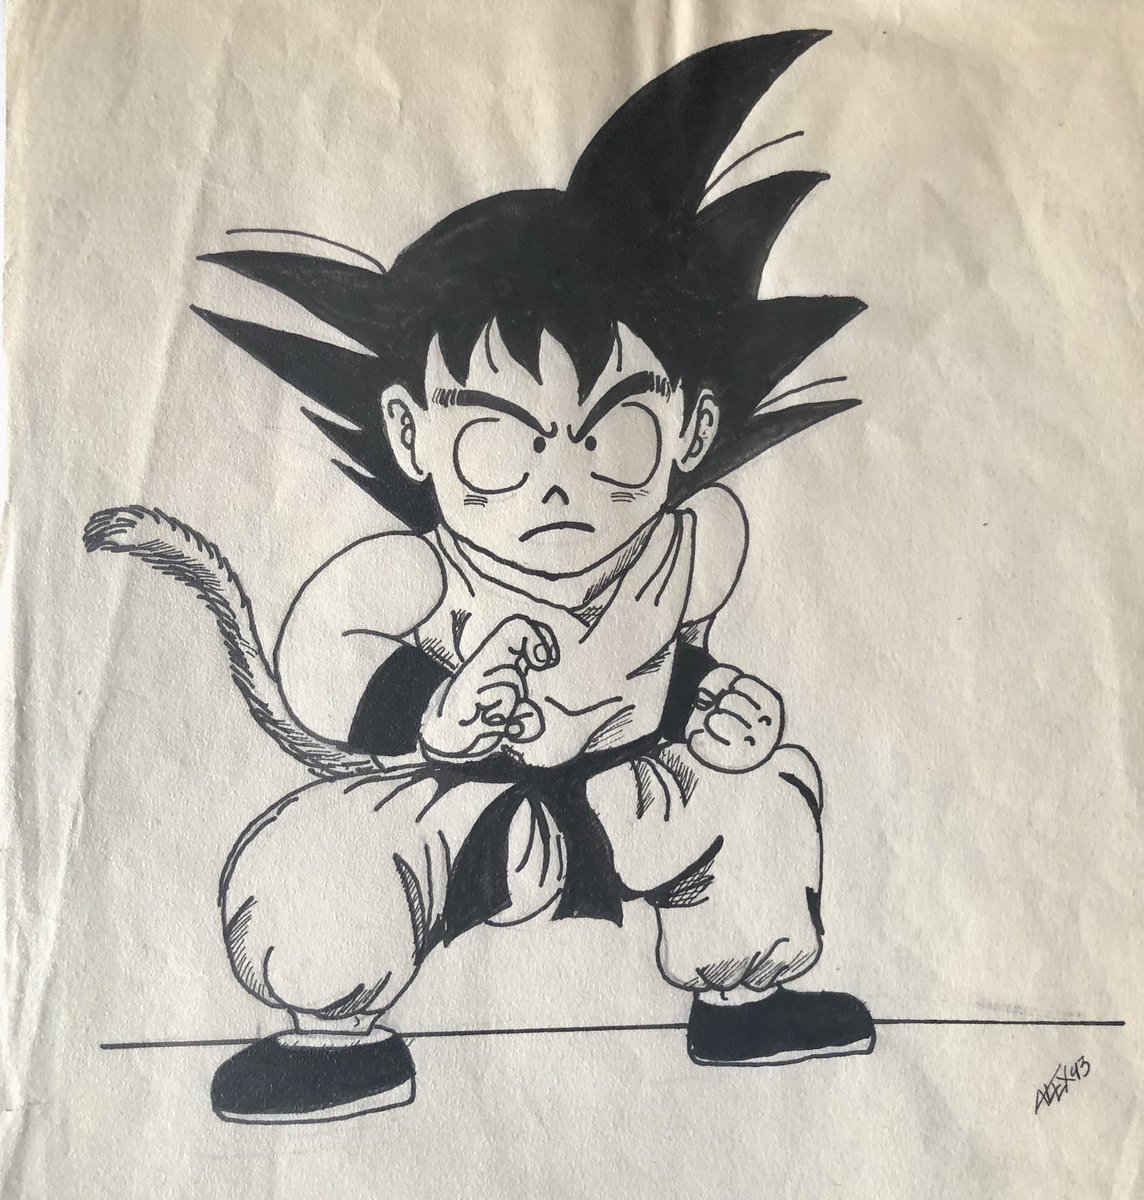 Era 1993 mi afición por dibujar se vio asaltada por un estilo manga japonés que revolucionaría nuestra forma de dibujar, la primera vez que dibujé a Goku. Gracias sensei AKira Toriyama. D.E.P 
El Día 9 de mayo por cómo se lee la cifra (9/5) en japonés: GO (cinco) y KU (nueve)